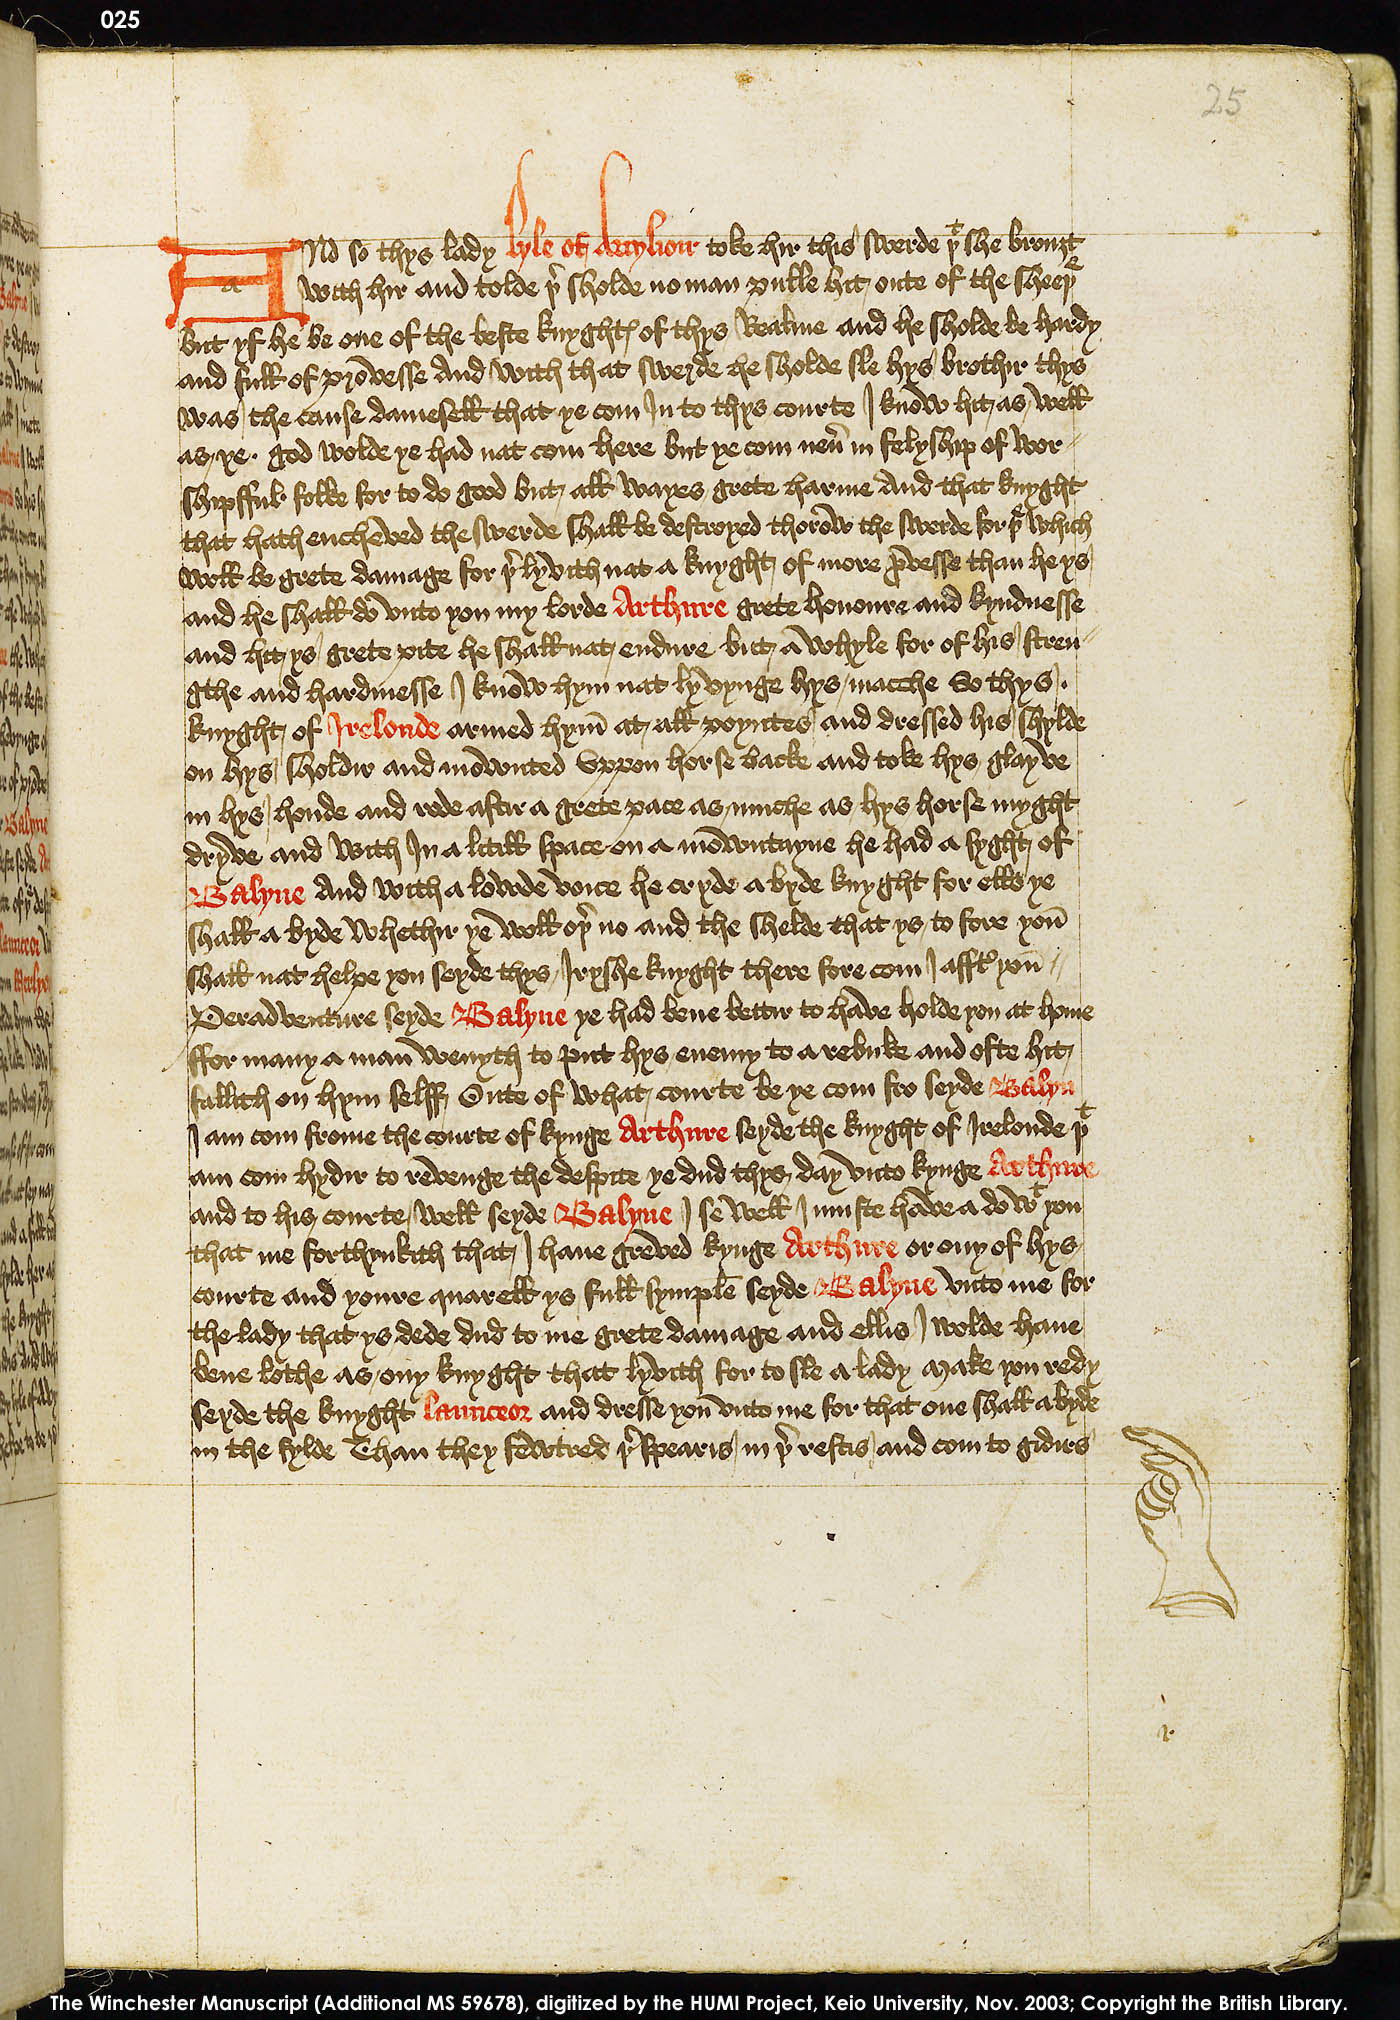 Folio 25r